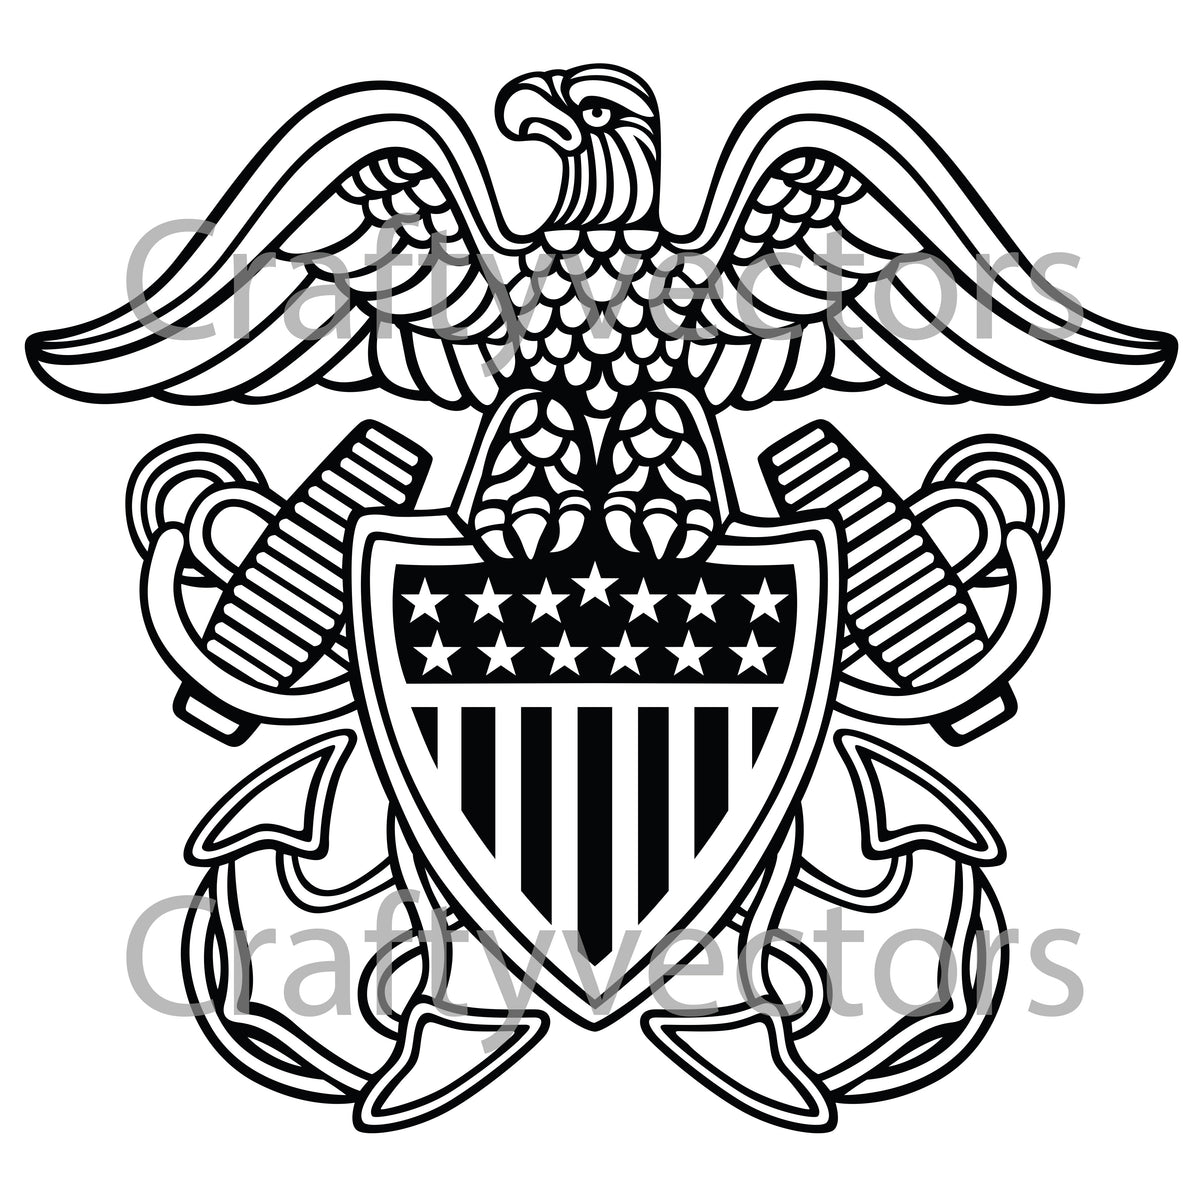 official navy logo vector